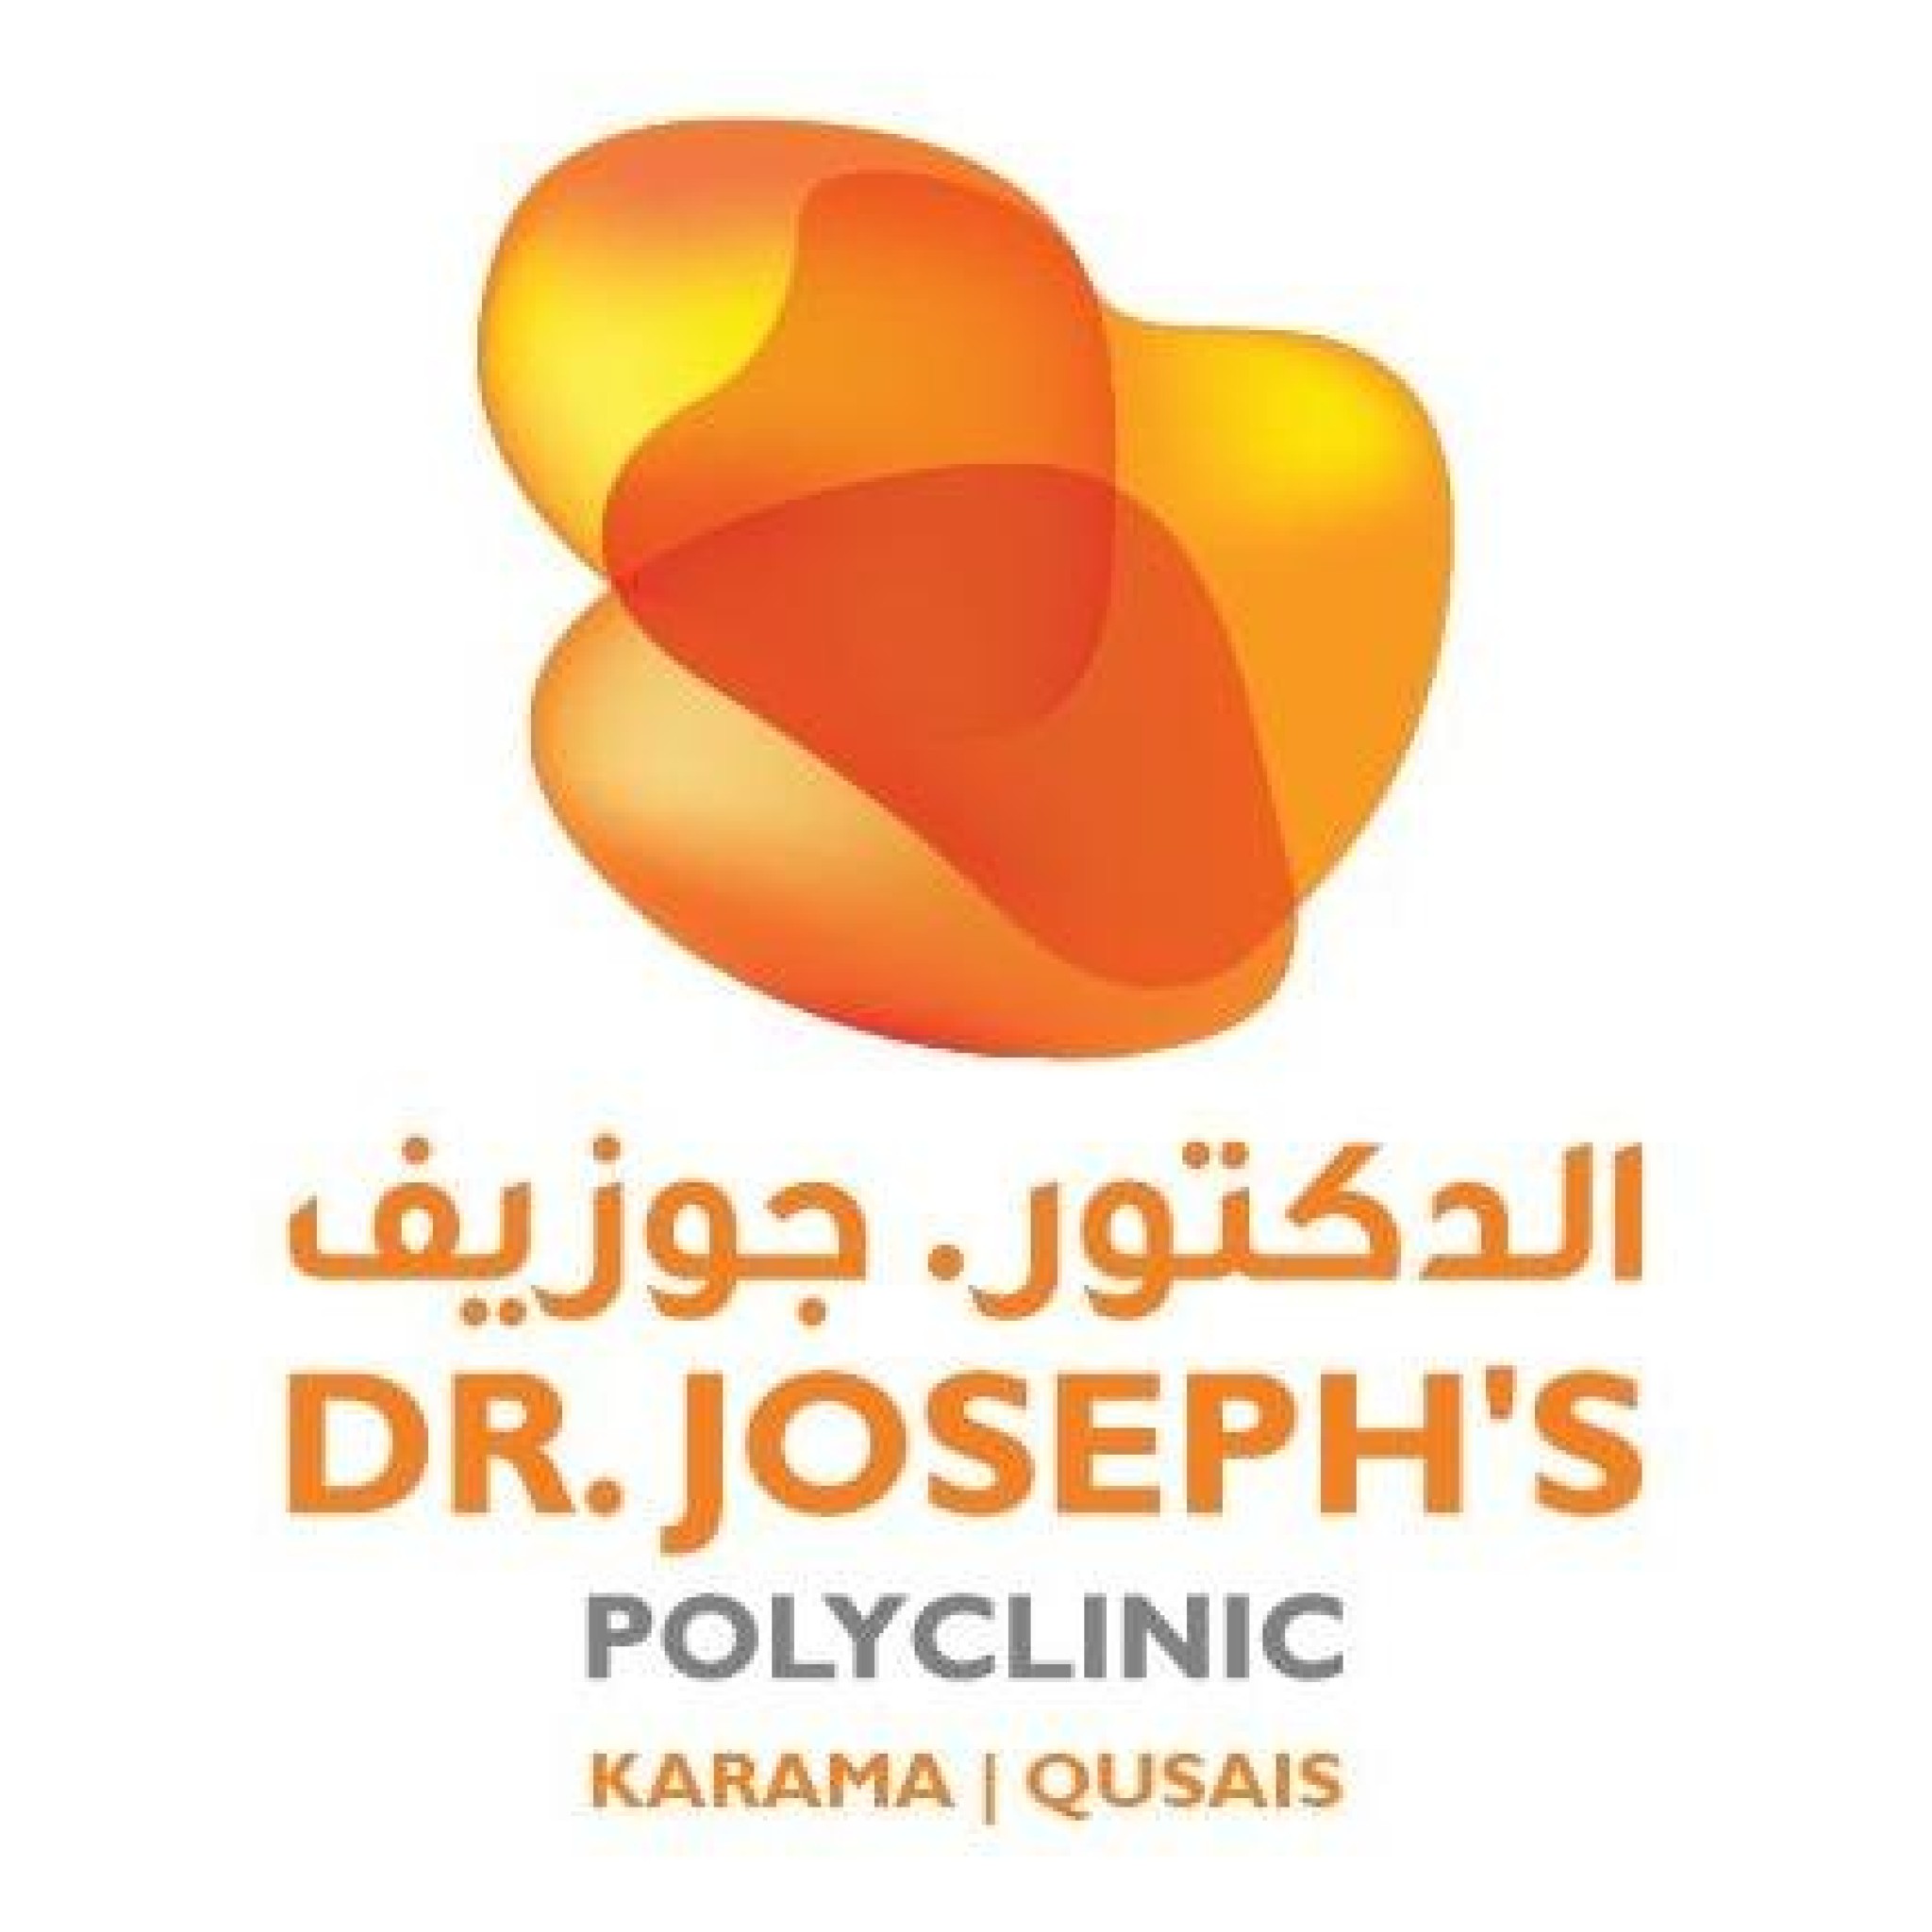  Dr Joseph Polyclinic  - Al Qusais